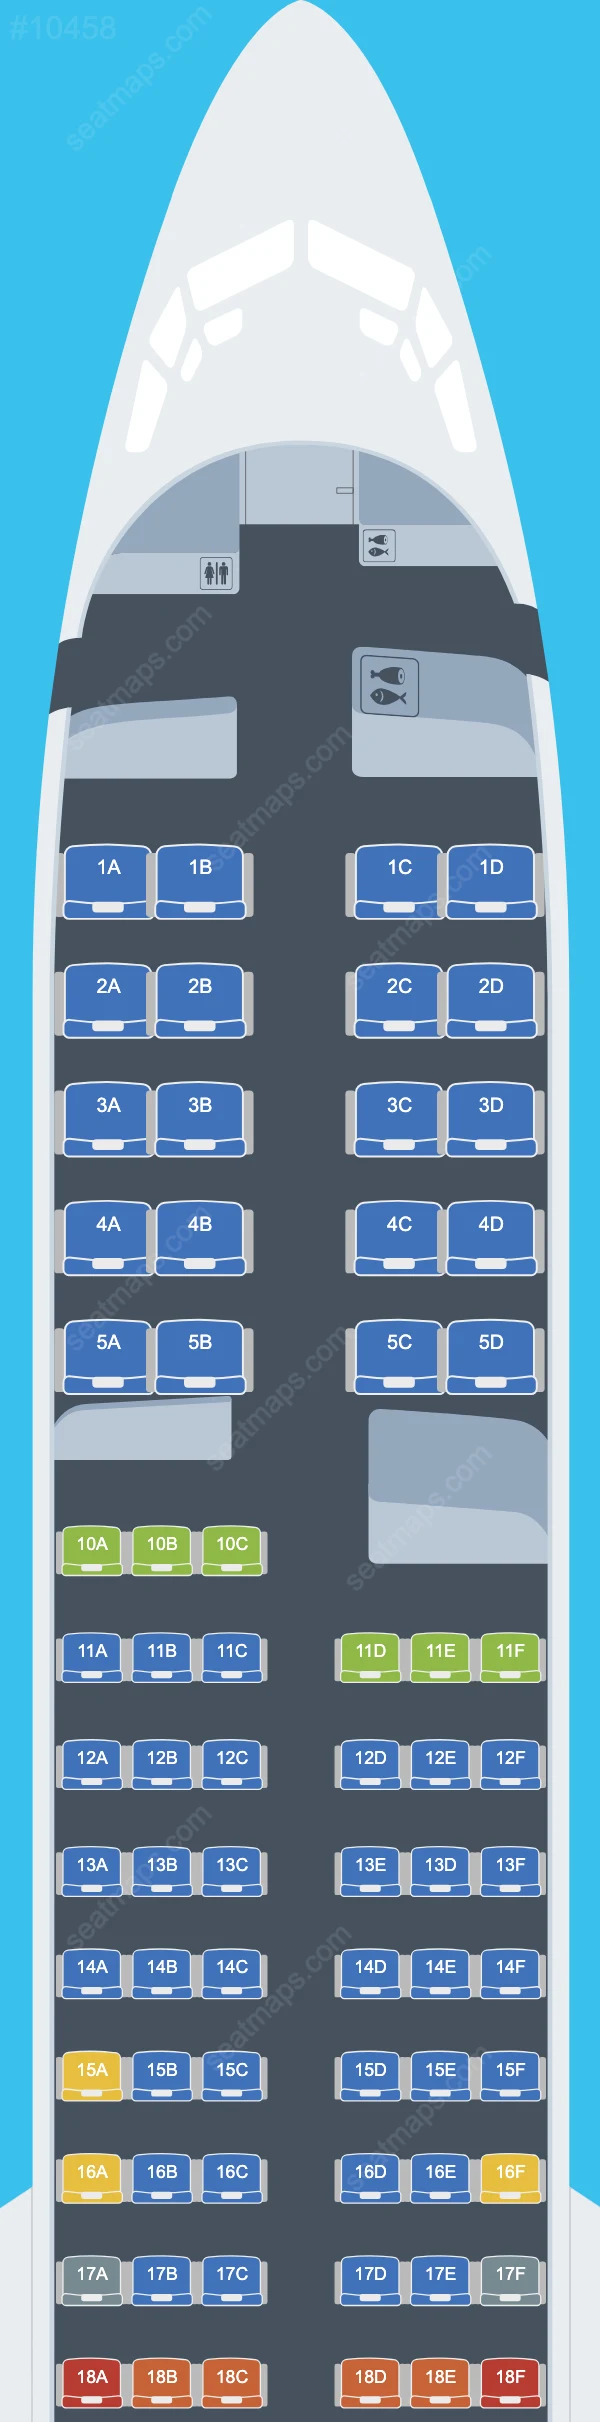 Delta Boeing 737 Seat Maps 737-900 ER V.2